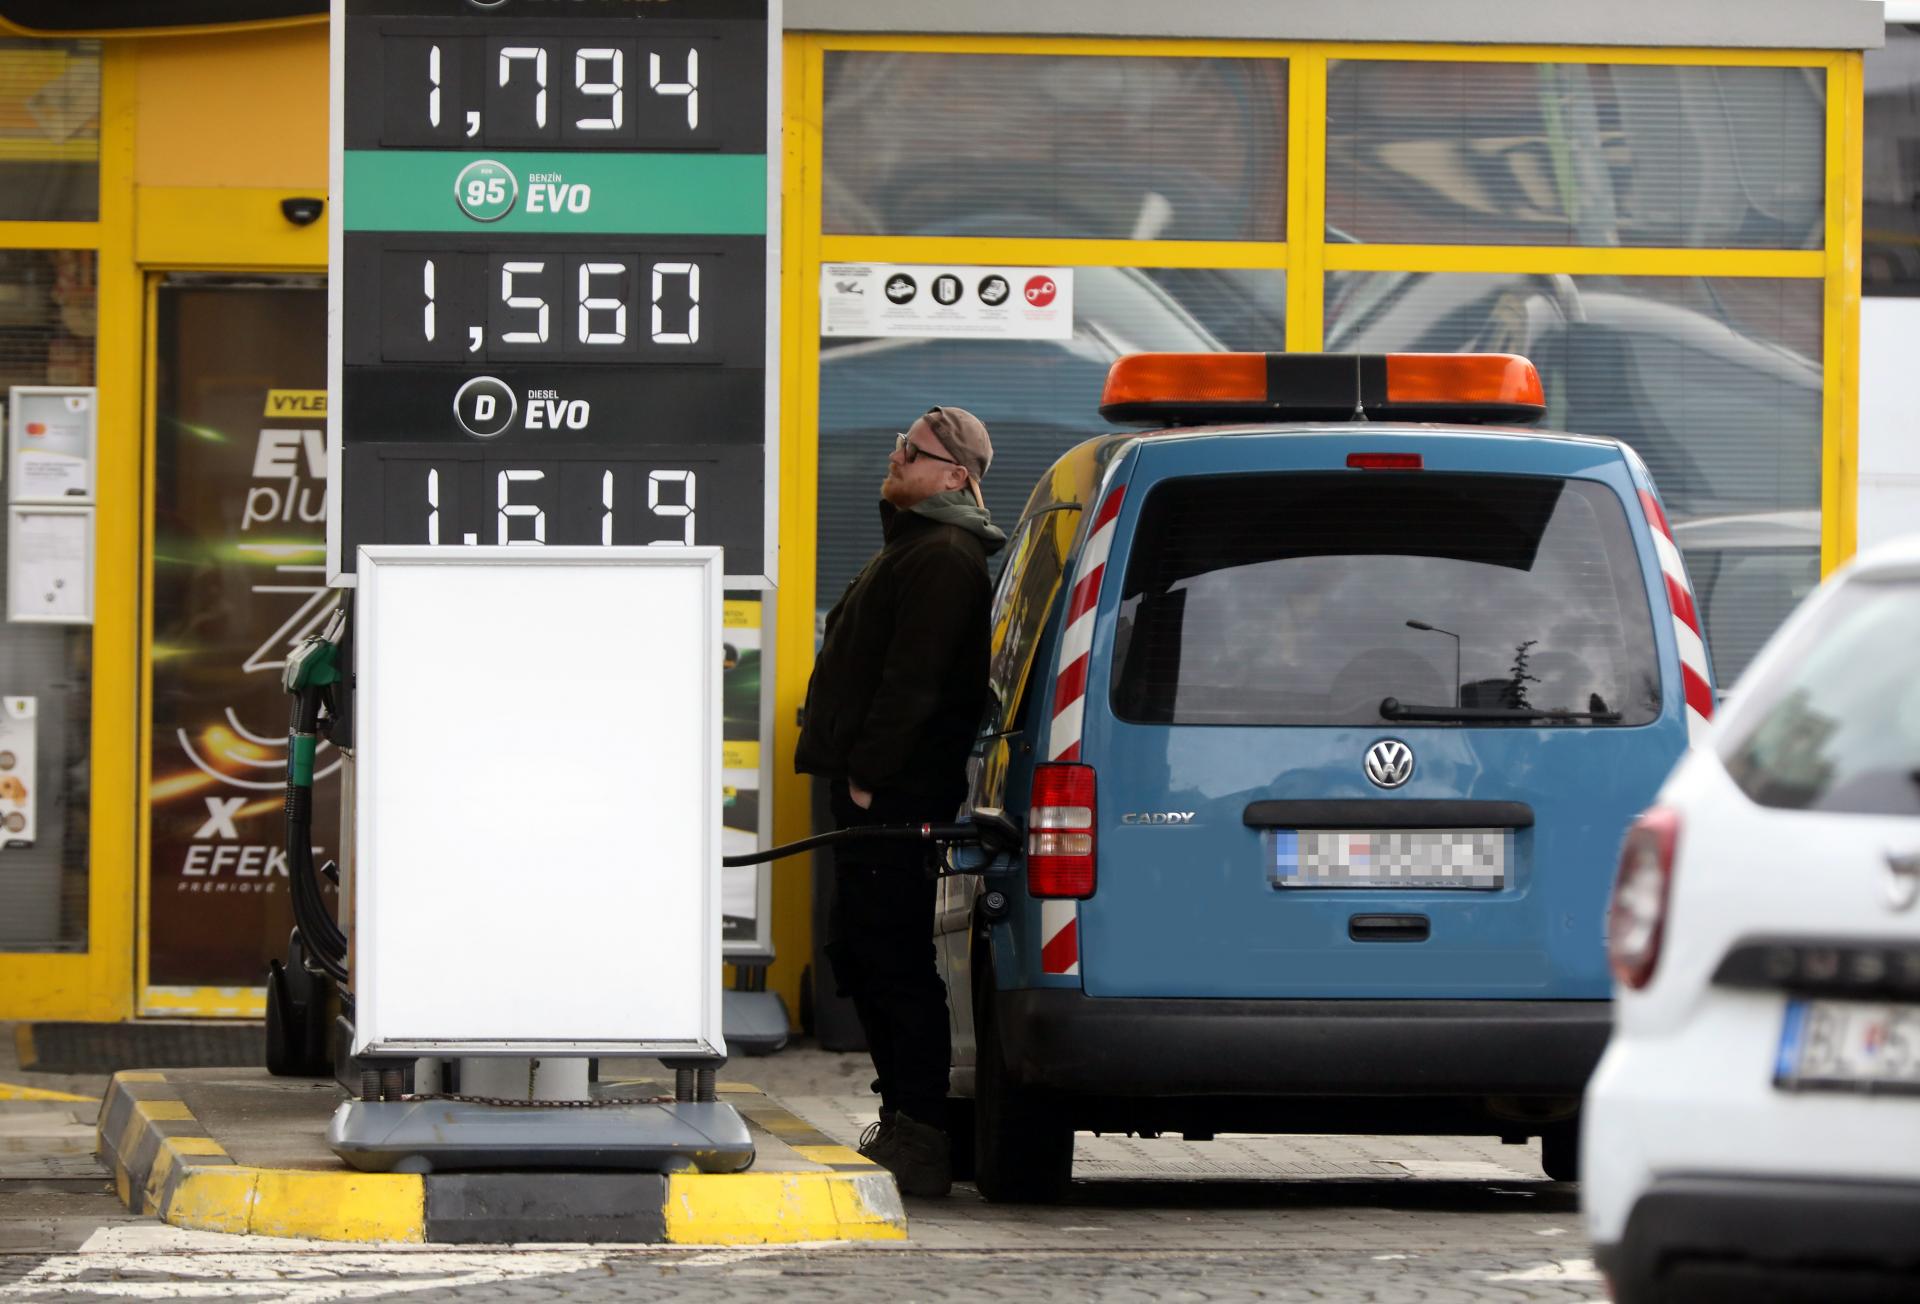 Dobrá správa pre vodičov, analytici očakávajú v najbližších týždňoch mierny pokles cien pohonných látok